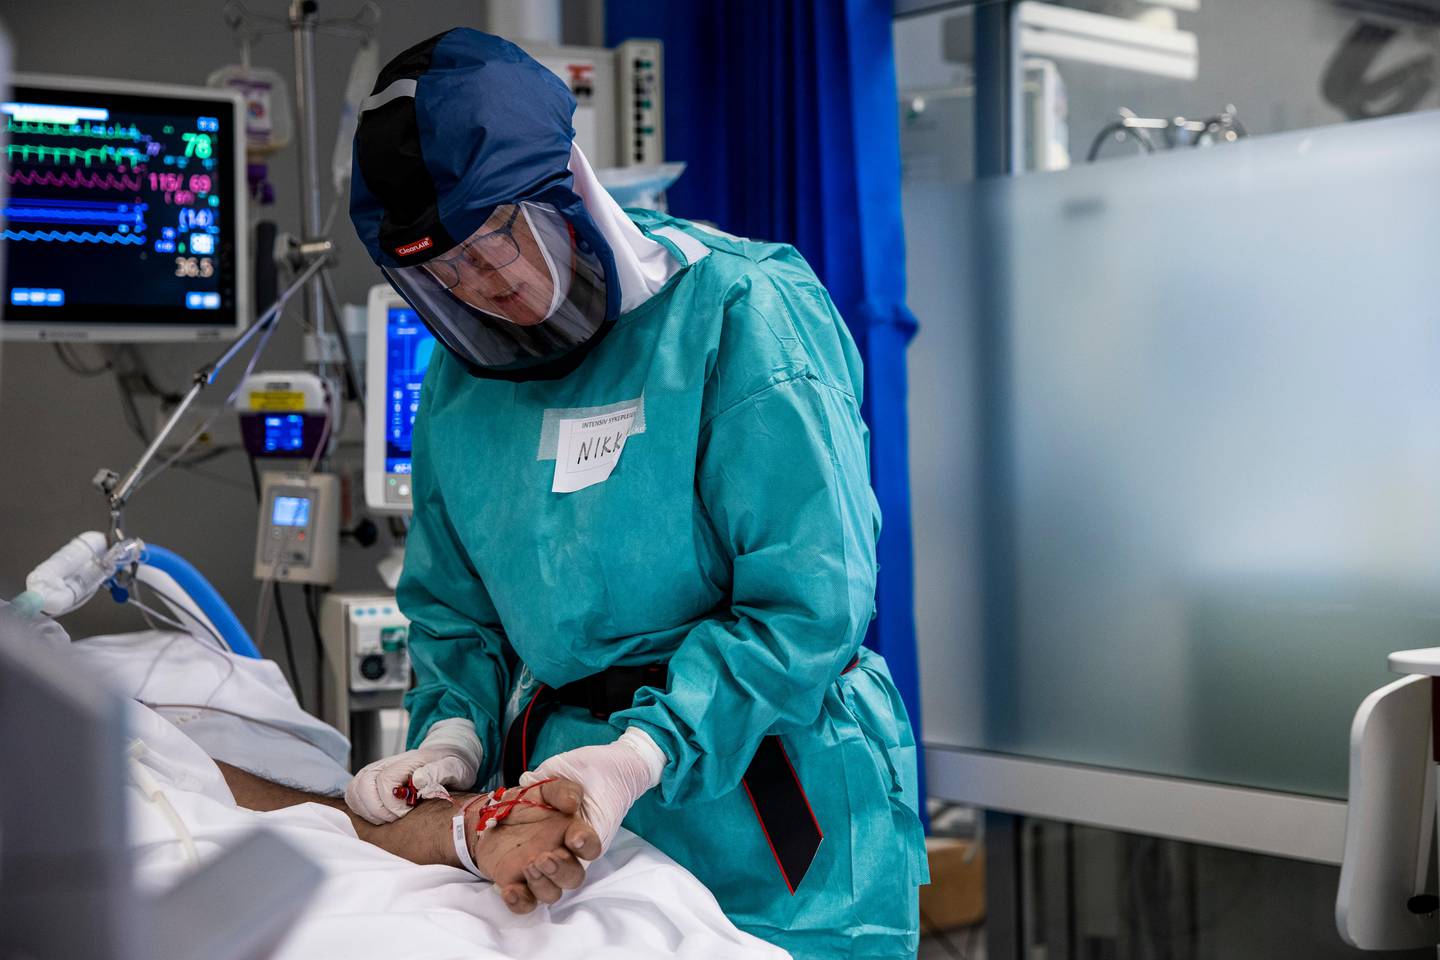 Oslo 20201127
Behandling av pasienter med Covid-19 på intensivavdeling på Oslo Universitetssykehus Rikshospitalet. «Nikki» Anniken Hars behandler en av pasientene.
Foto: Jil Yngland / NTB